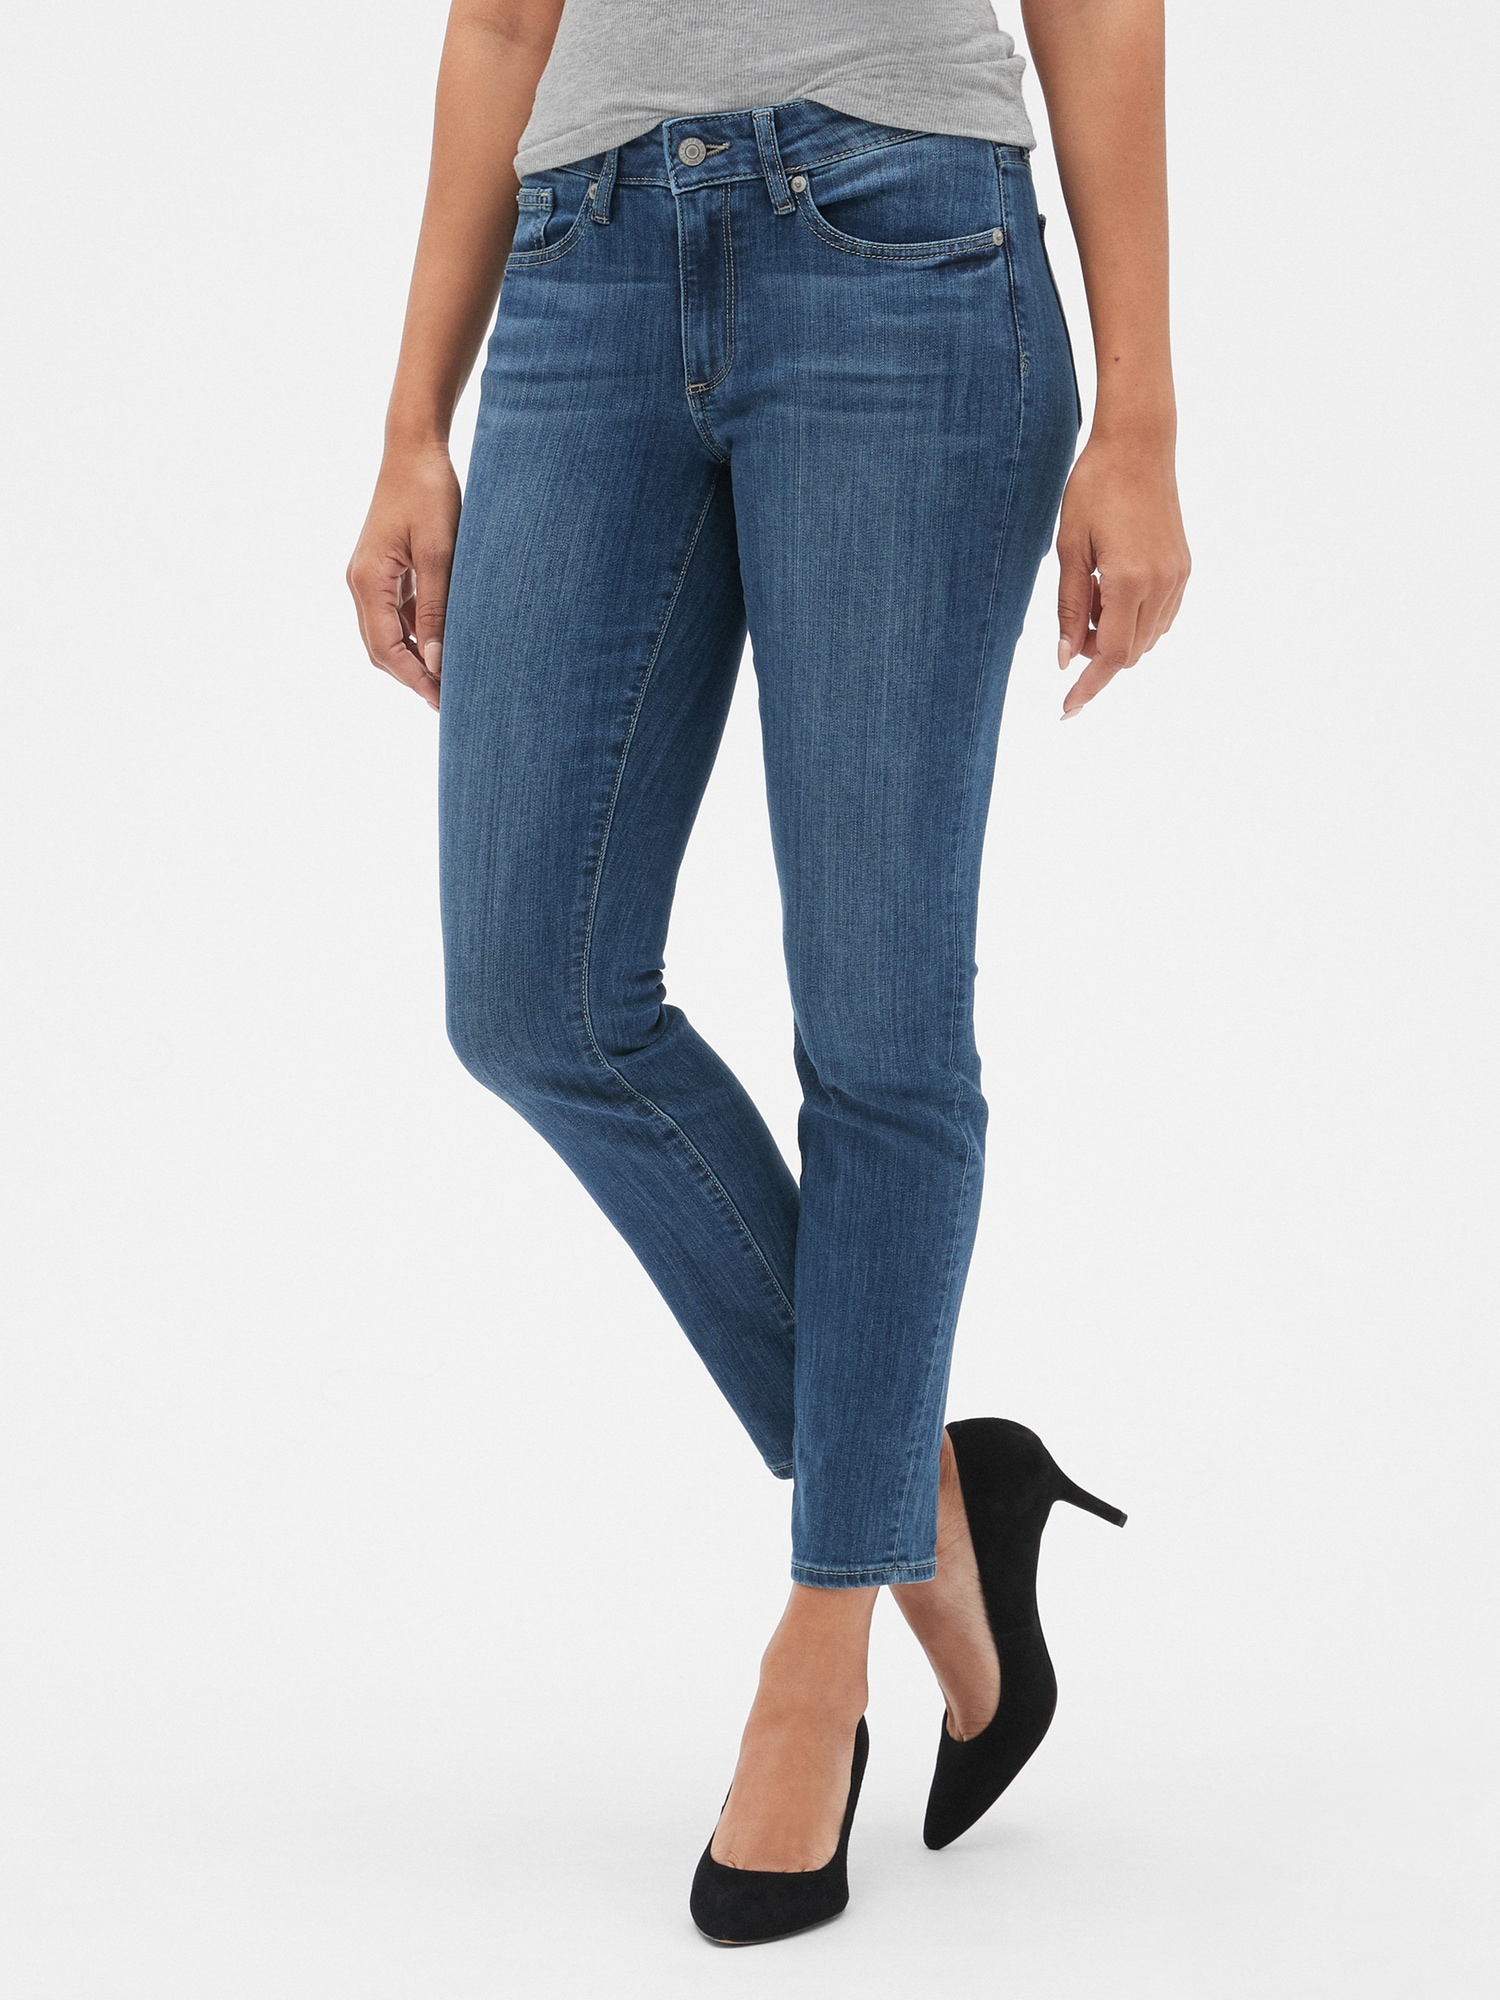 plads logik Bekræftelse Mid Rise Curvy True Skinny Jeans | Gap Factory